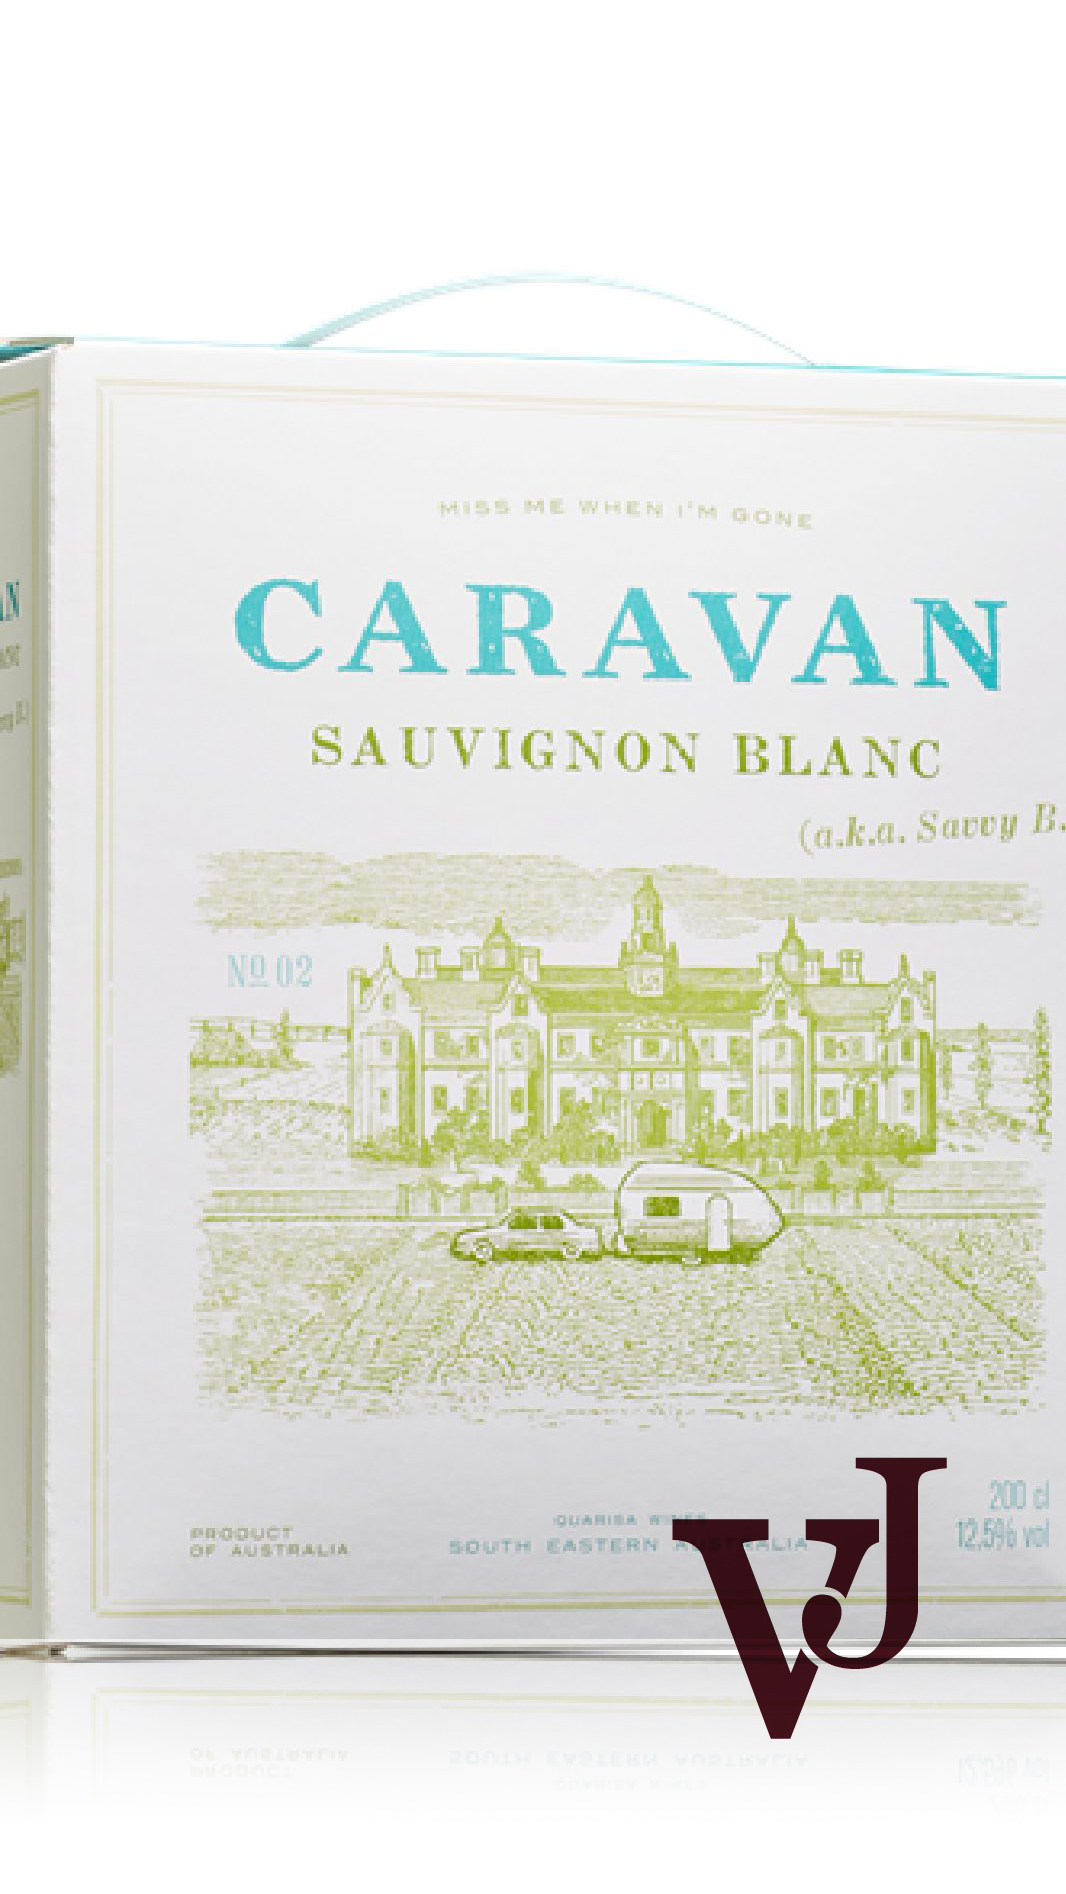 Vitt Vin - Caravan Sauvignon Blanc artikel nummer 226007 från producenten Quarisa Wines från området Australien - Vinjournalen.se